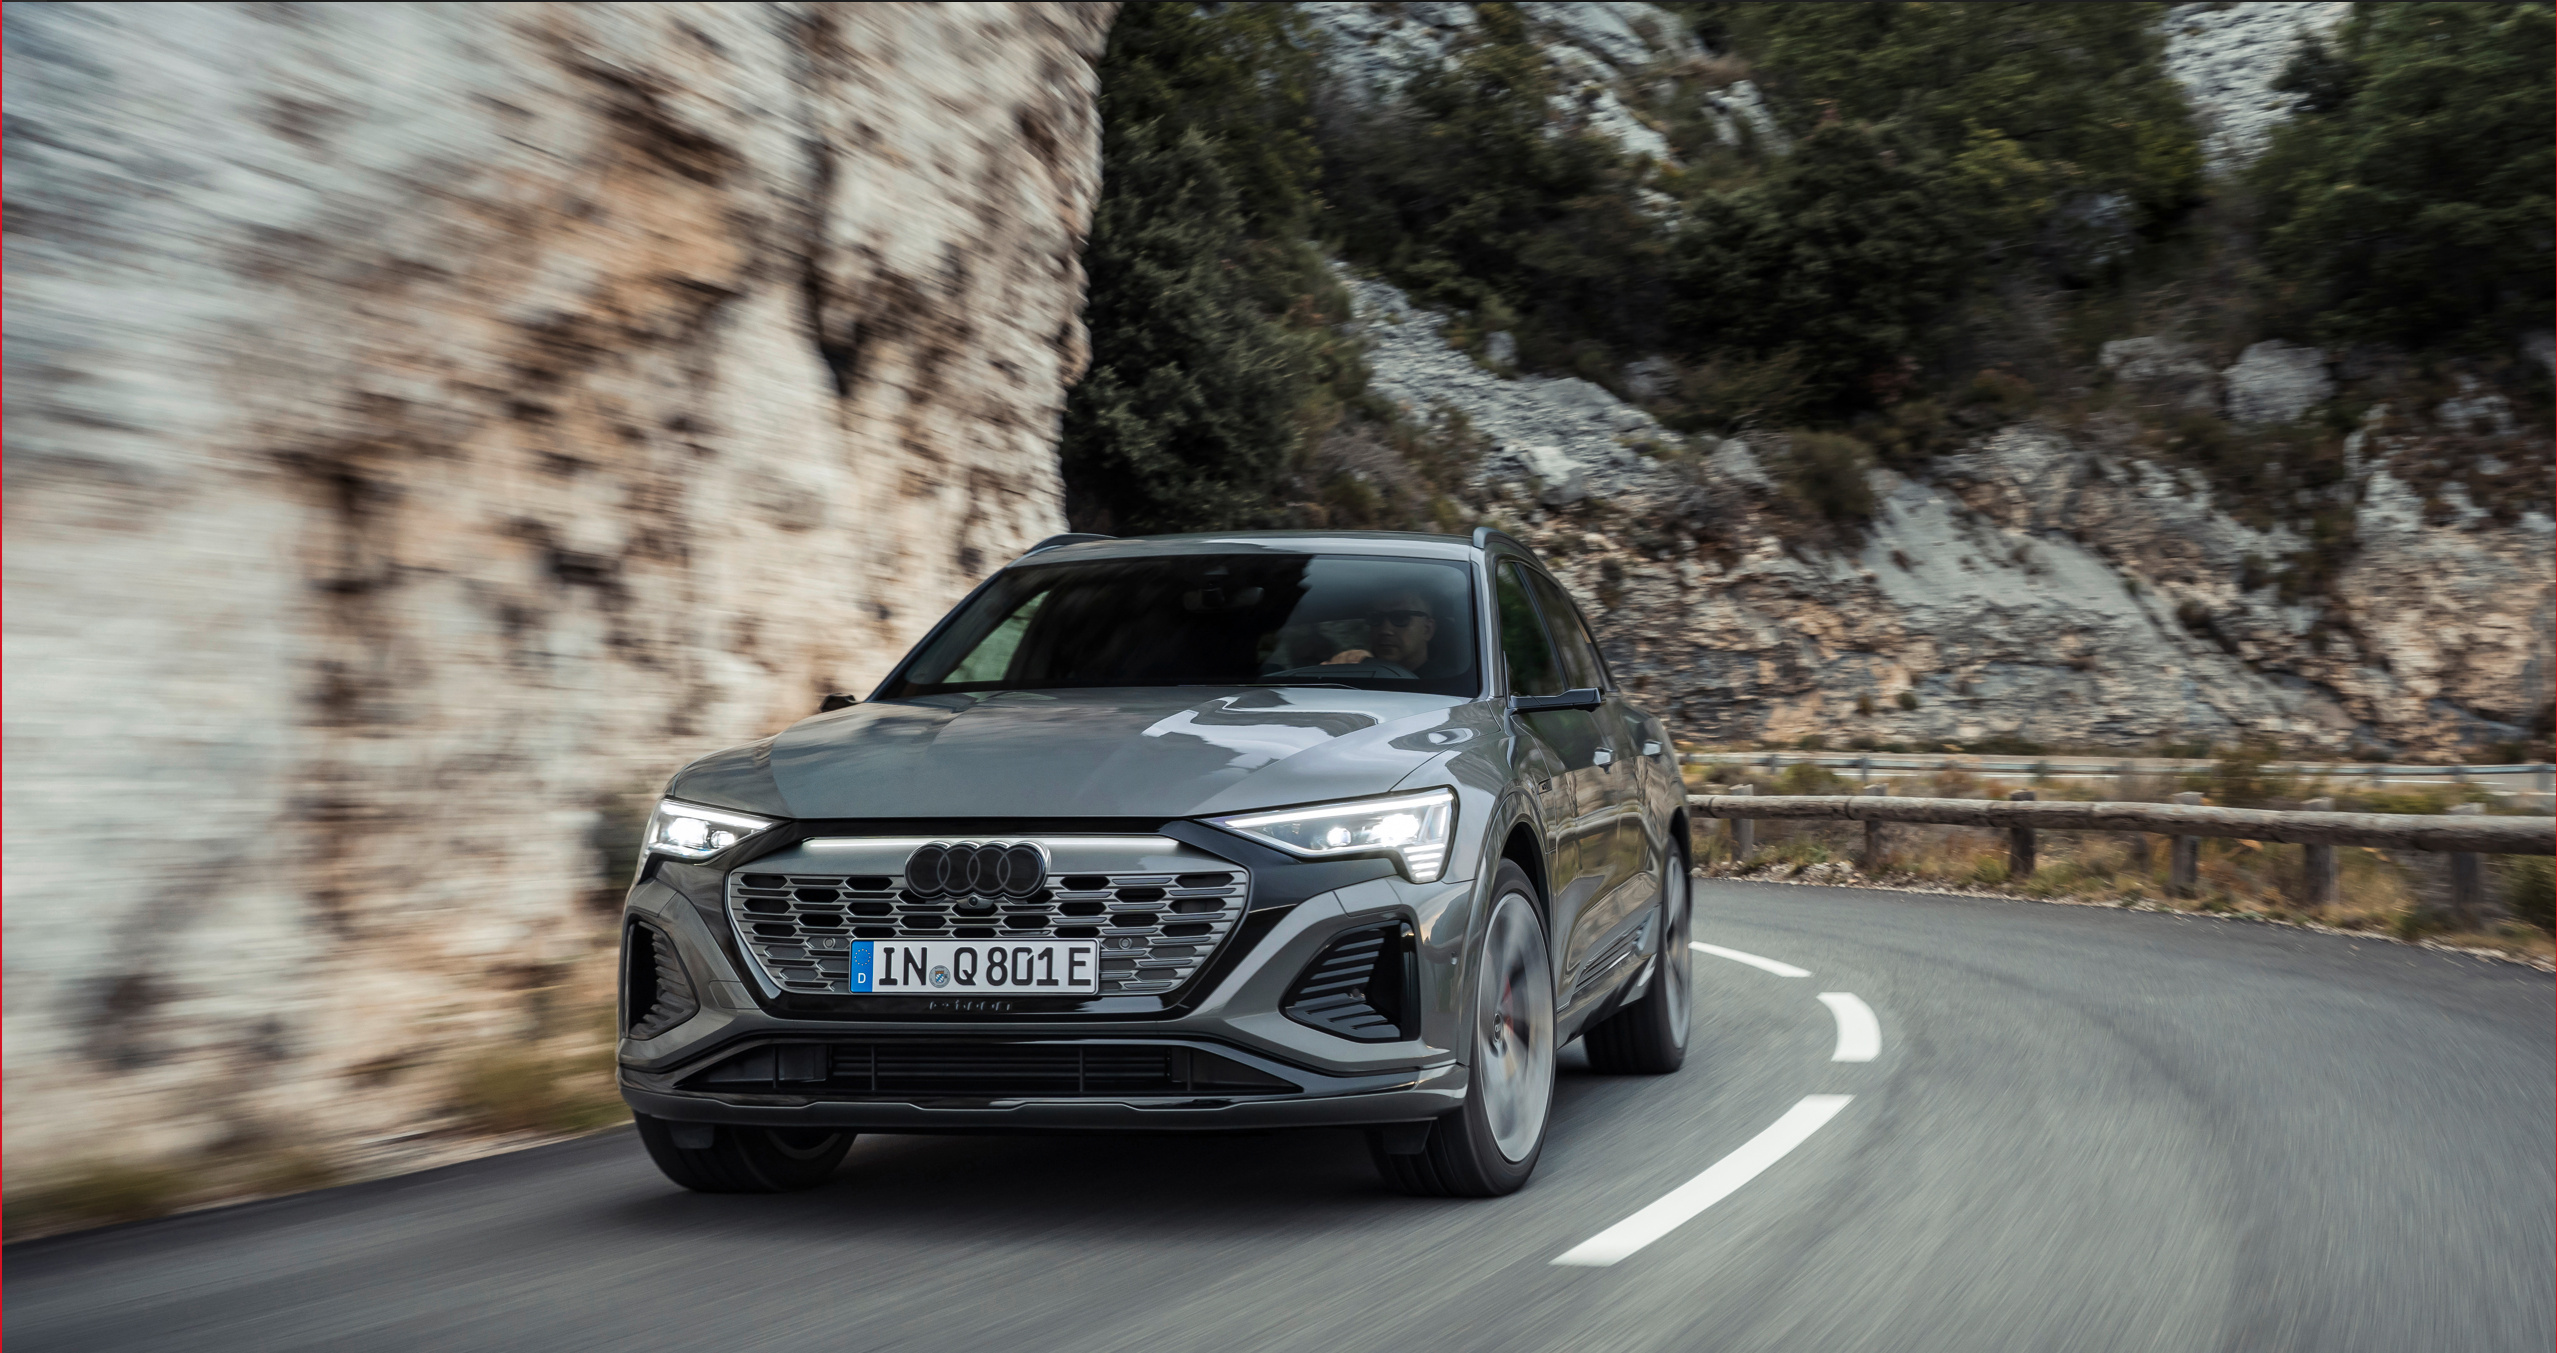 Chiếc SUV Q8 e-tron hàng đầu mới của Audi tự hào có phạm vi hoạt động tối đa 373 dặm